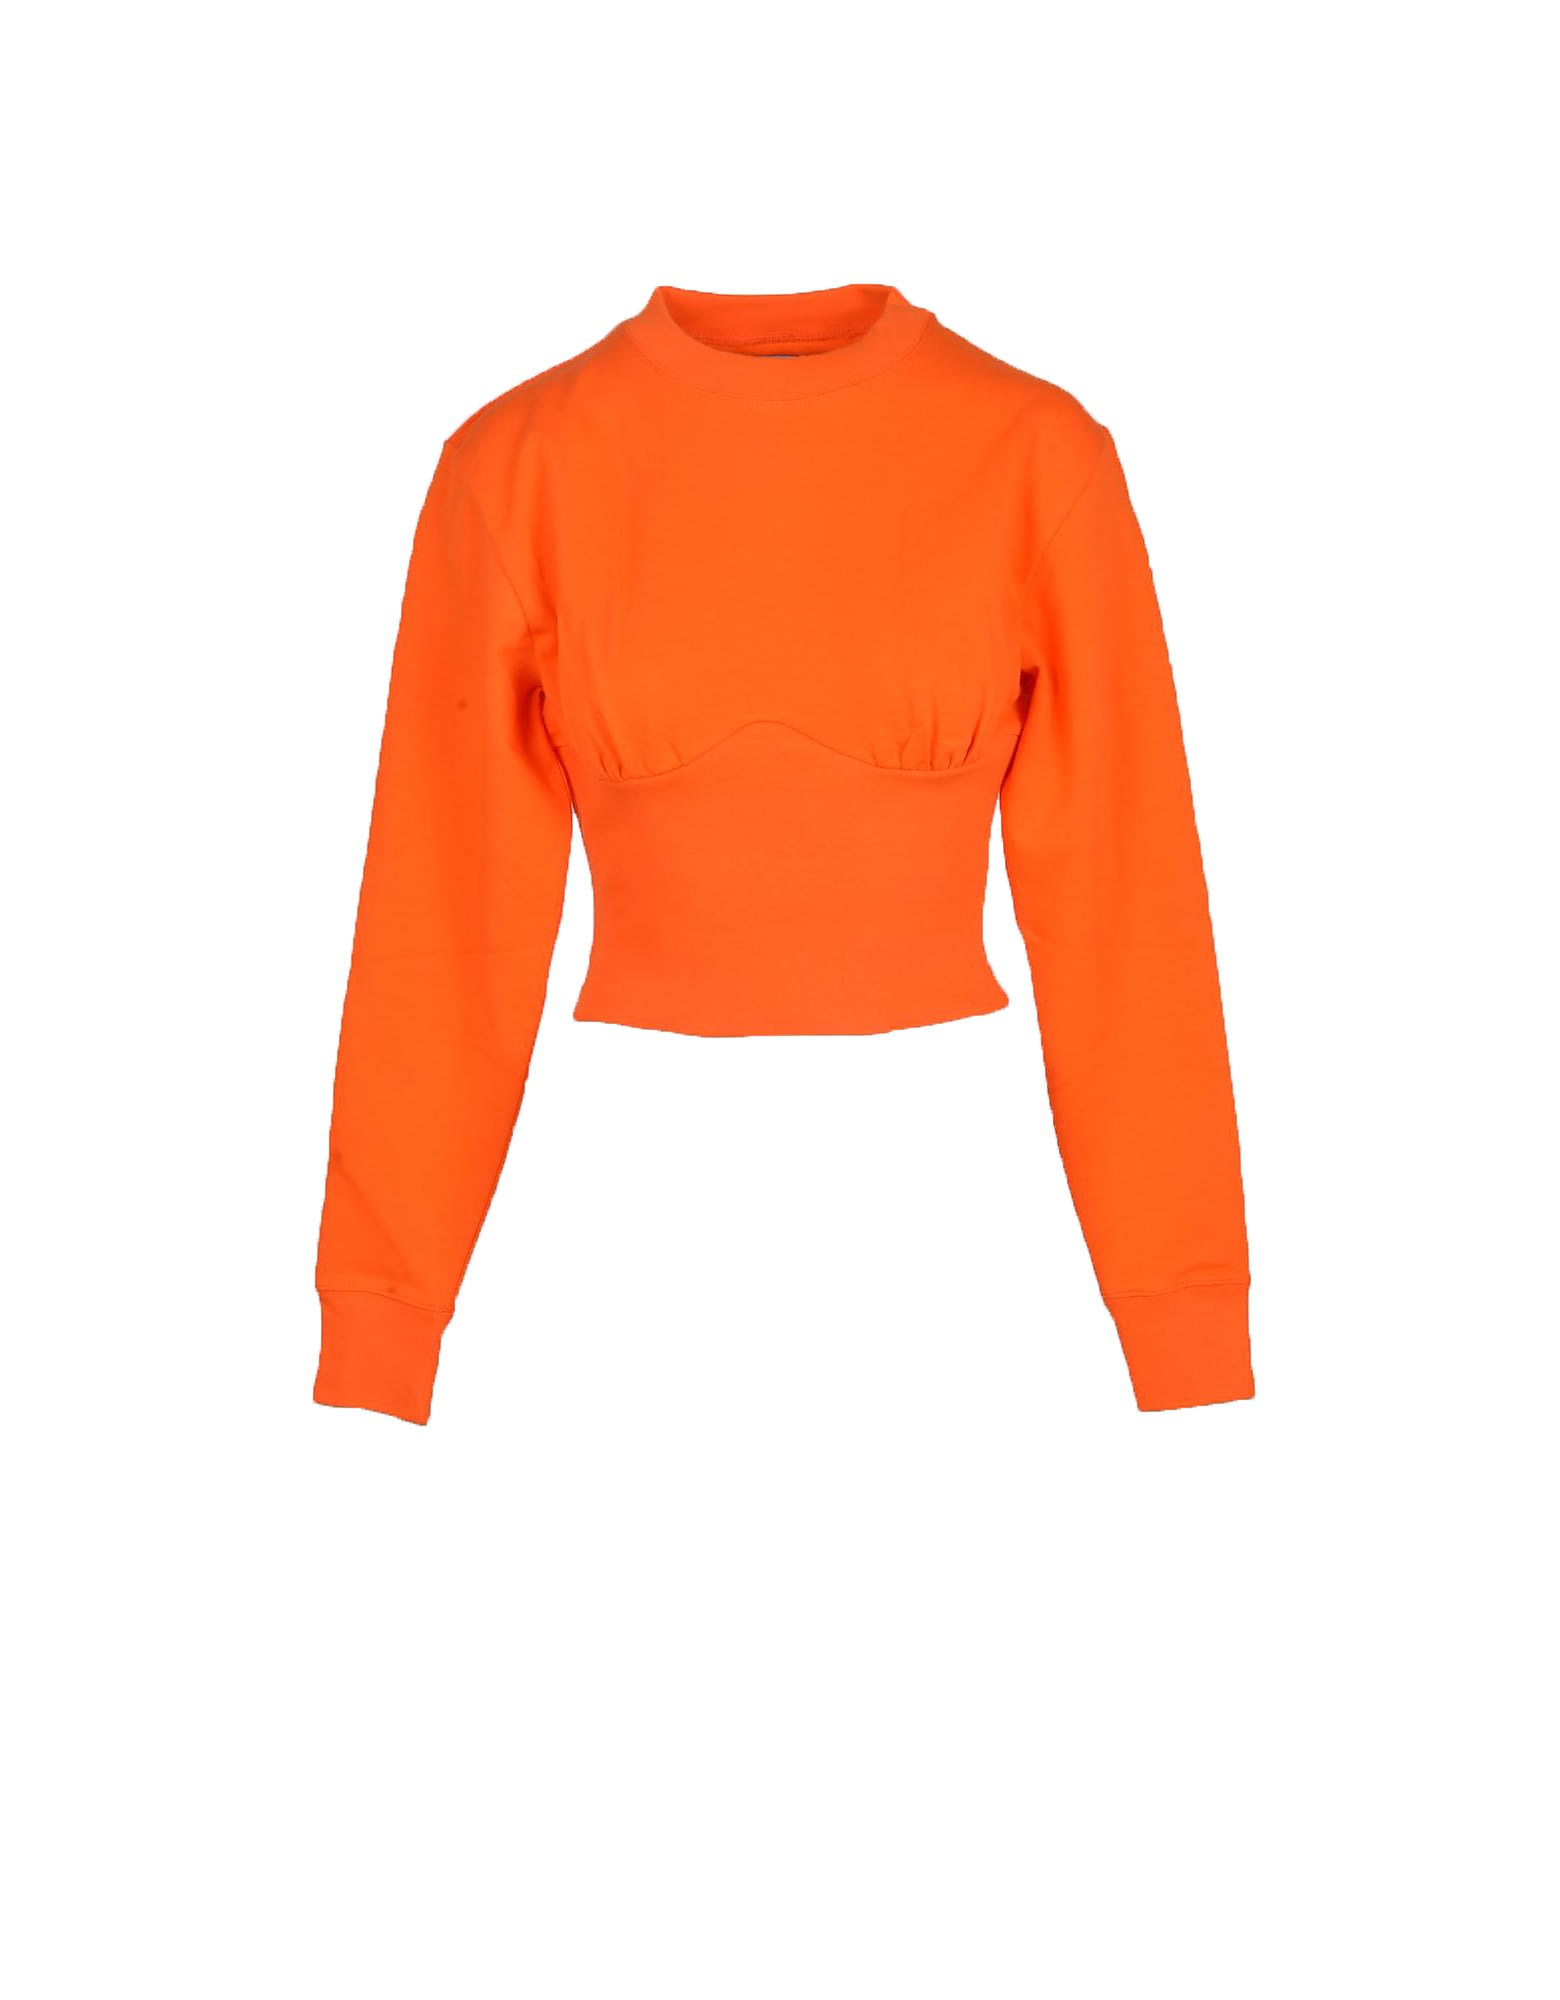 Vivienne Westwood Womens Orange Sweatshirt